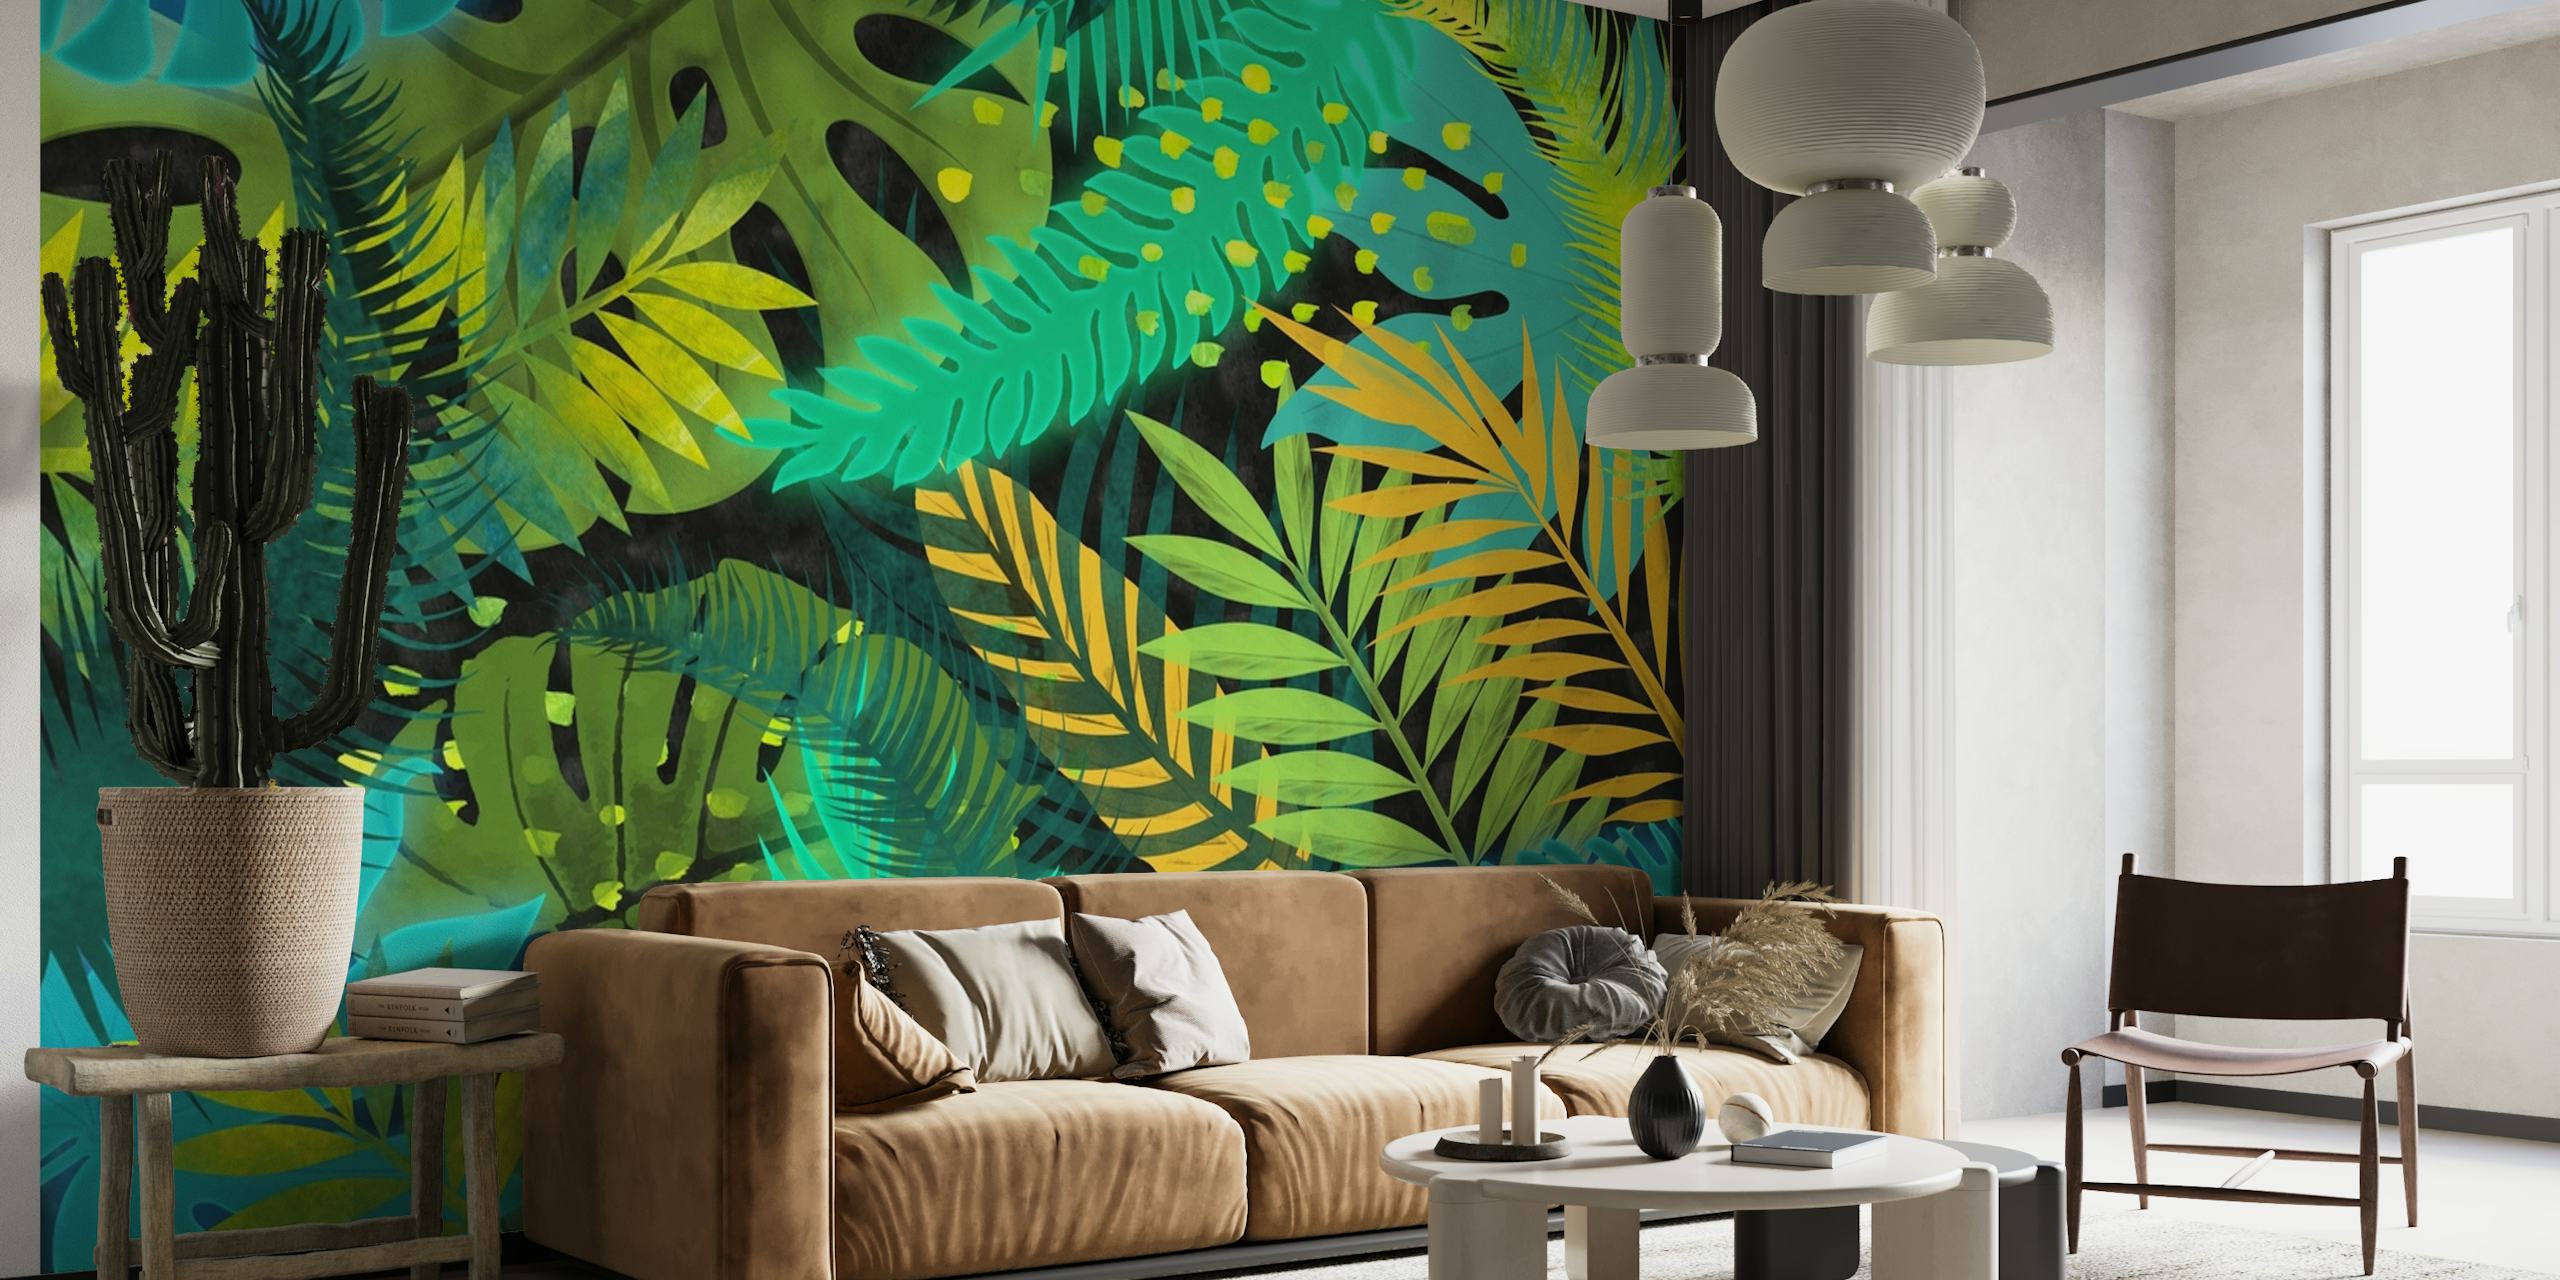 Fototapeta z tropikalnymi liśćmi z niebieskimi, zielonymi i żółtymi liśćmi do dekoracji wnętrz